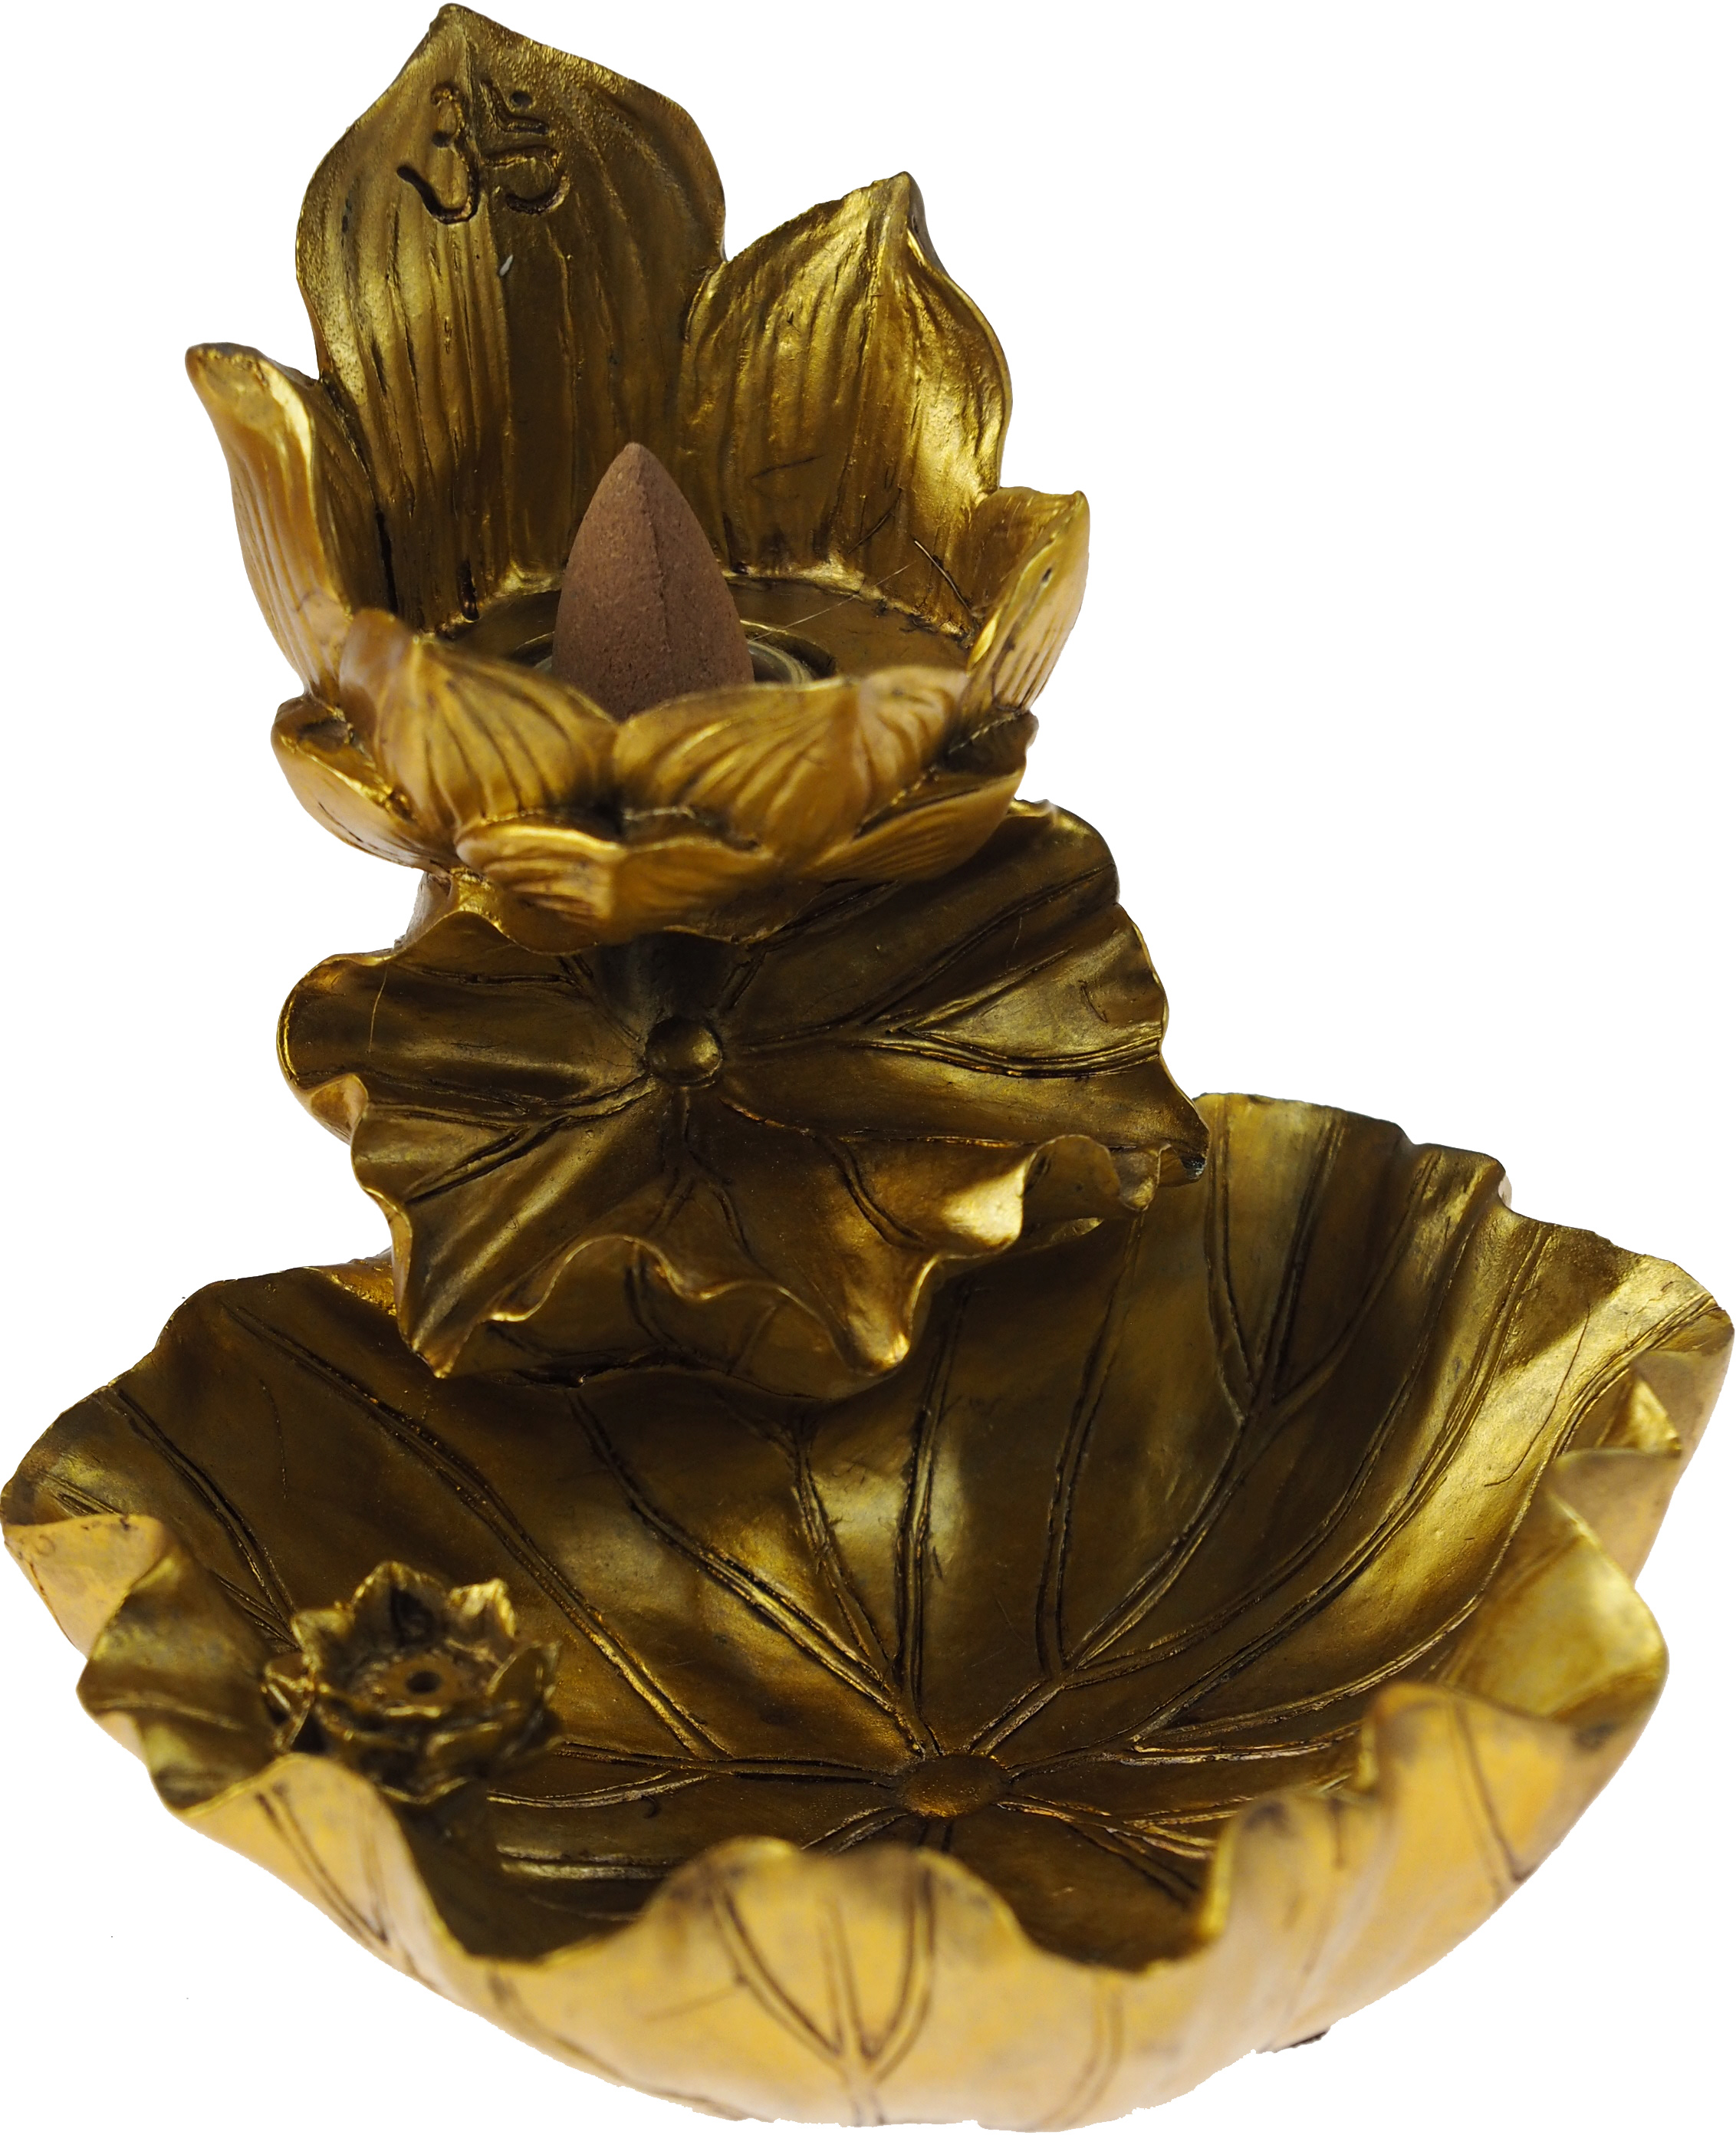 Lotus Of Tranquility Flower design Ornate Incense Cone Burner / Holder